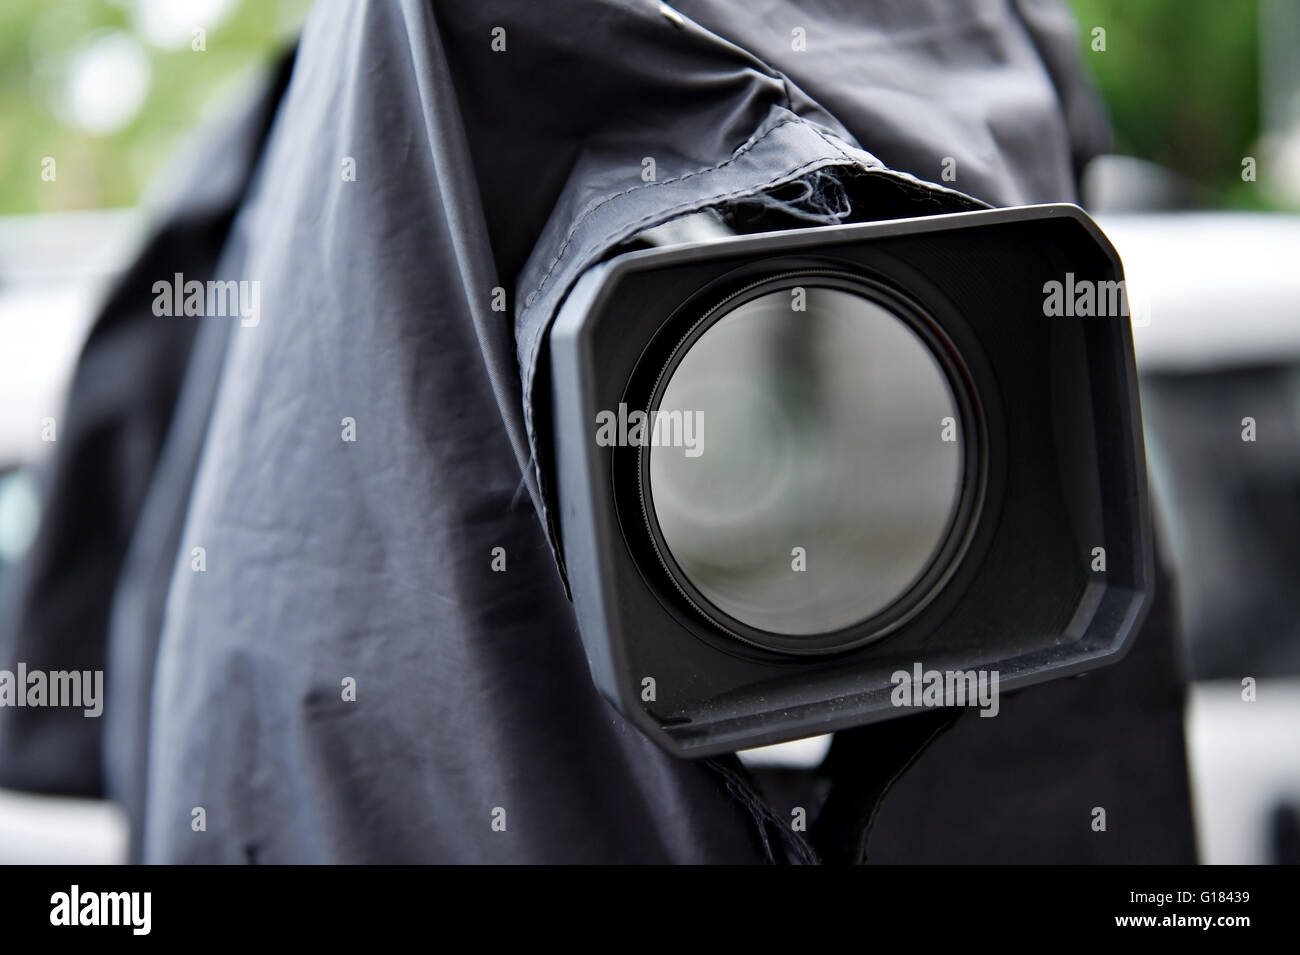 News appareil photo sur un trépied, protégé par une couverture de pluie noire Banque D'Images